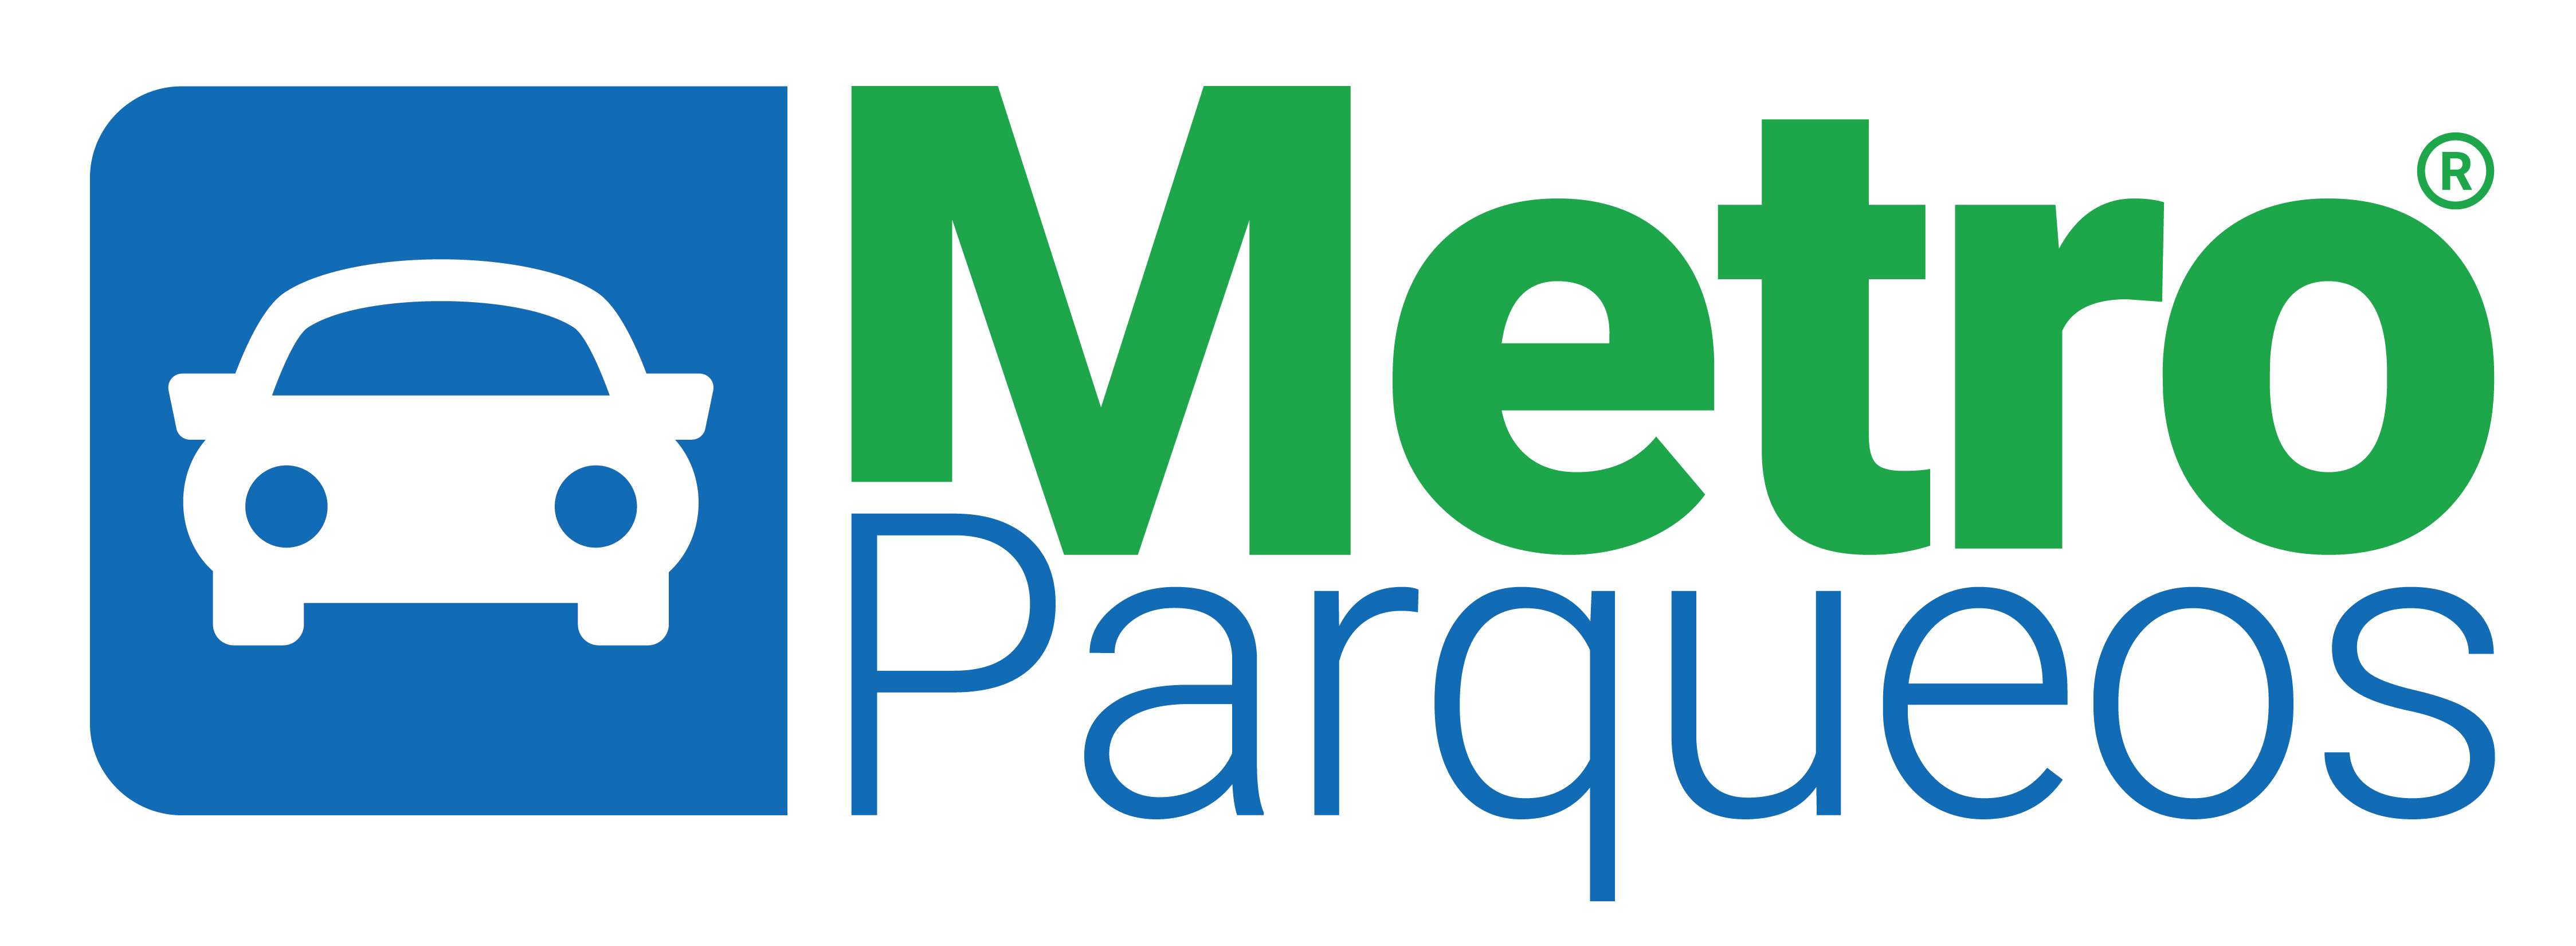 MetroParqueos